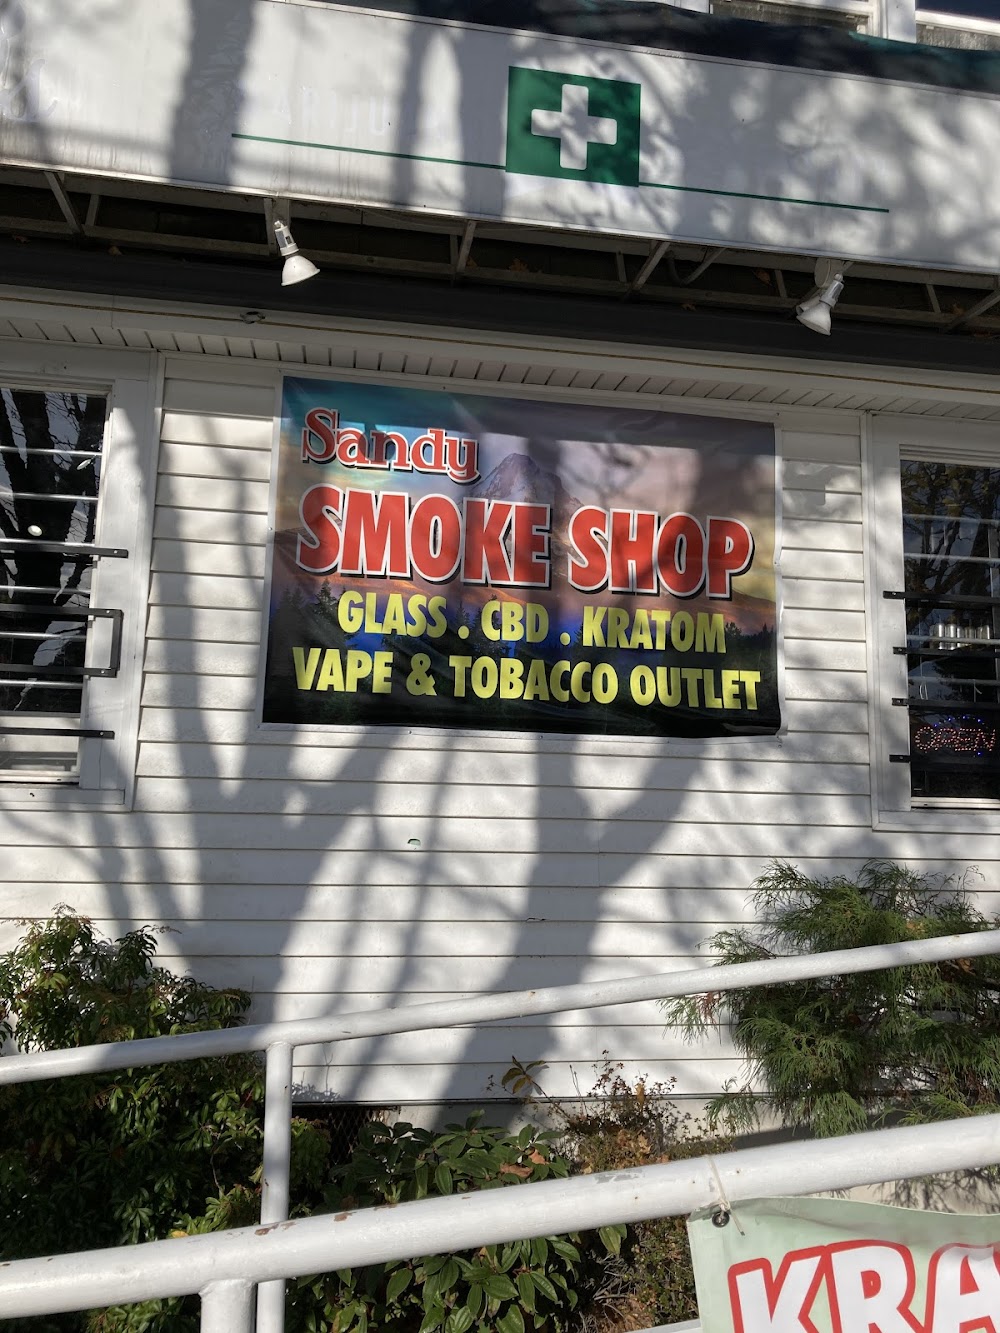 Smoke shop sandy